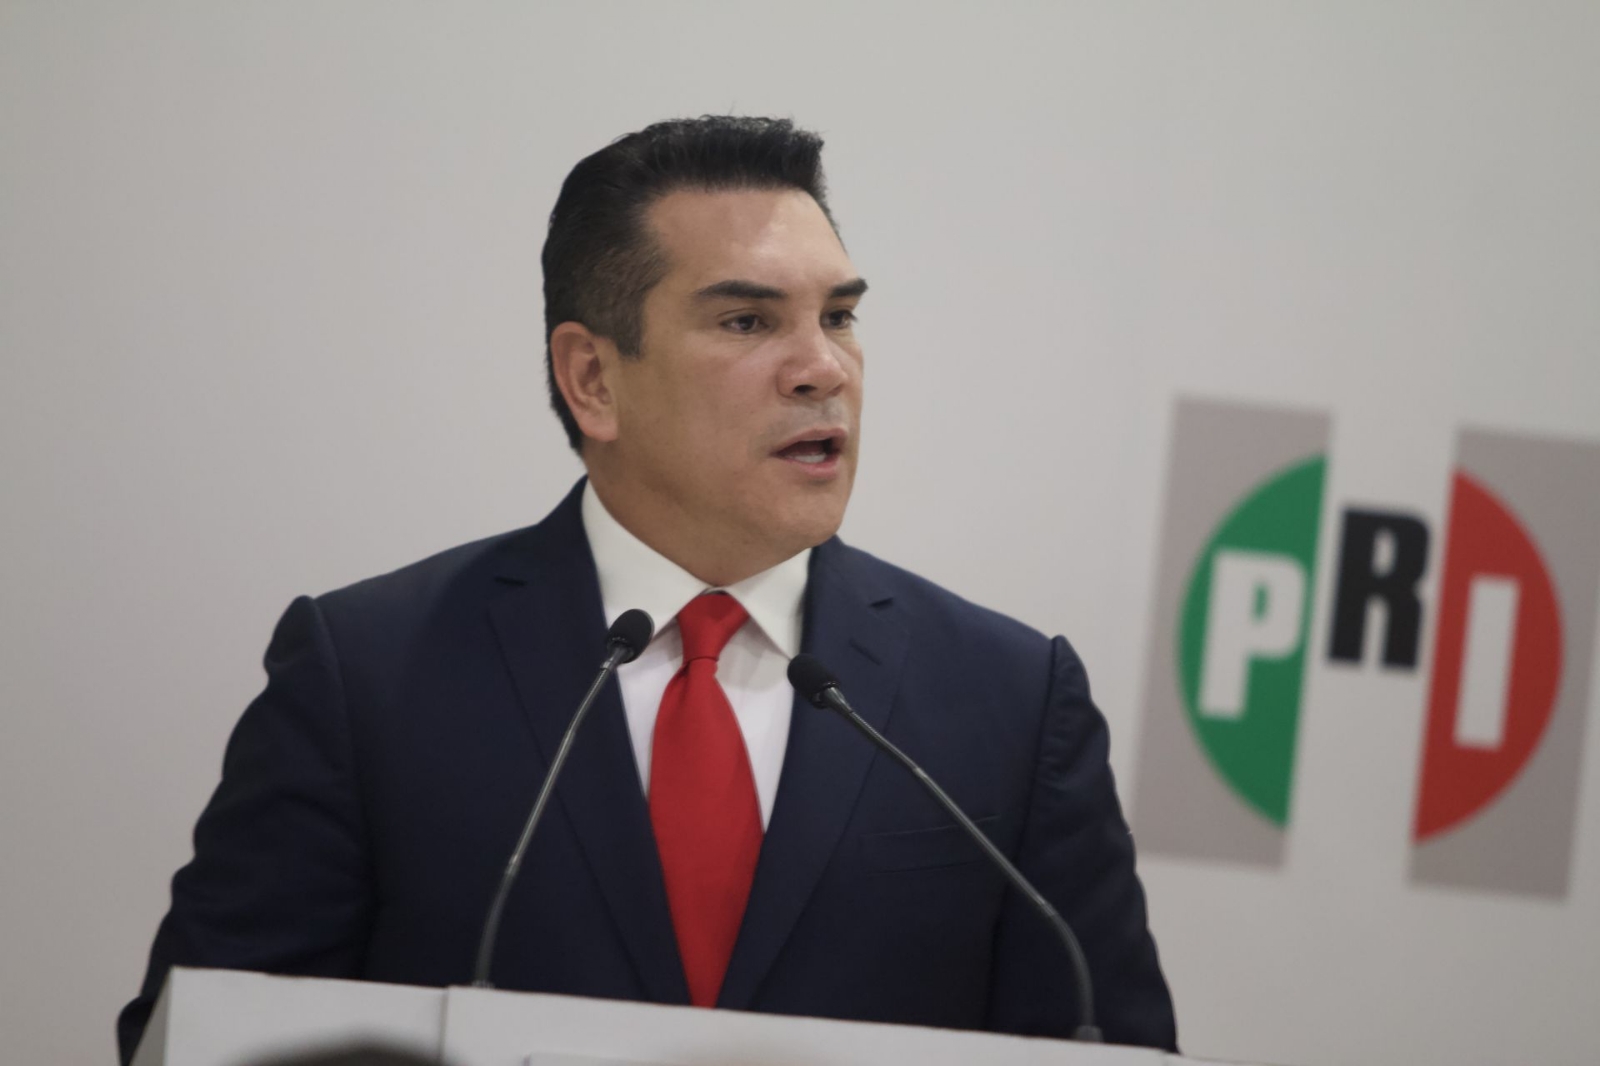 Gobierno de Campeche entrega solicitud de desafuero de Alejandro Moreno Cárdenas